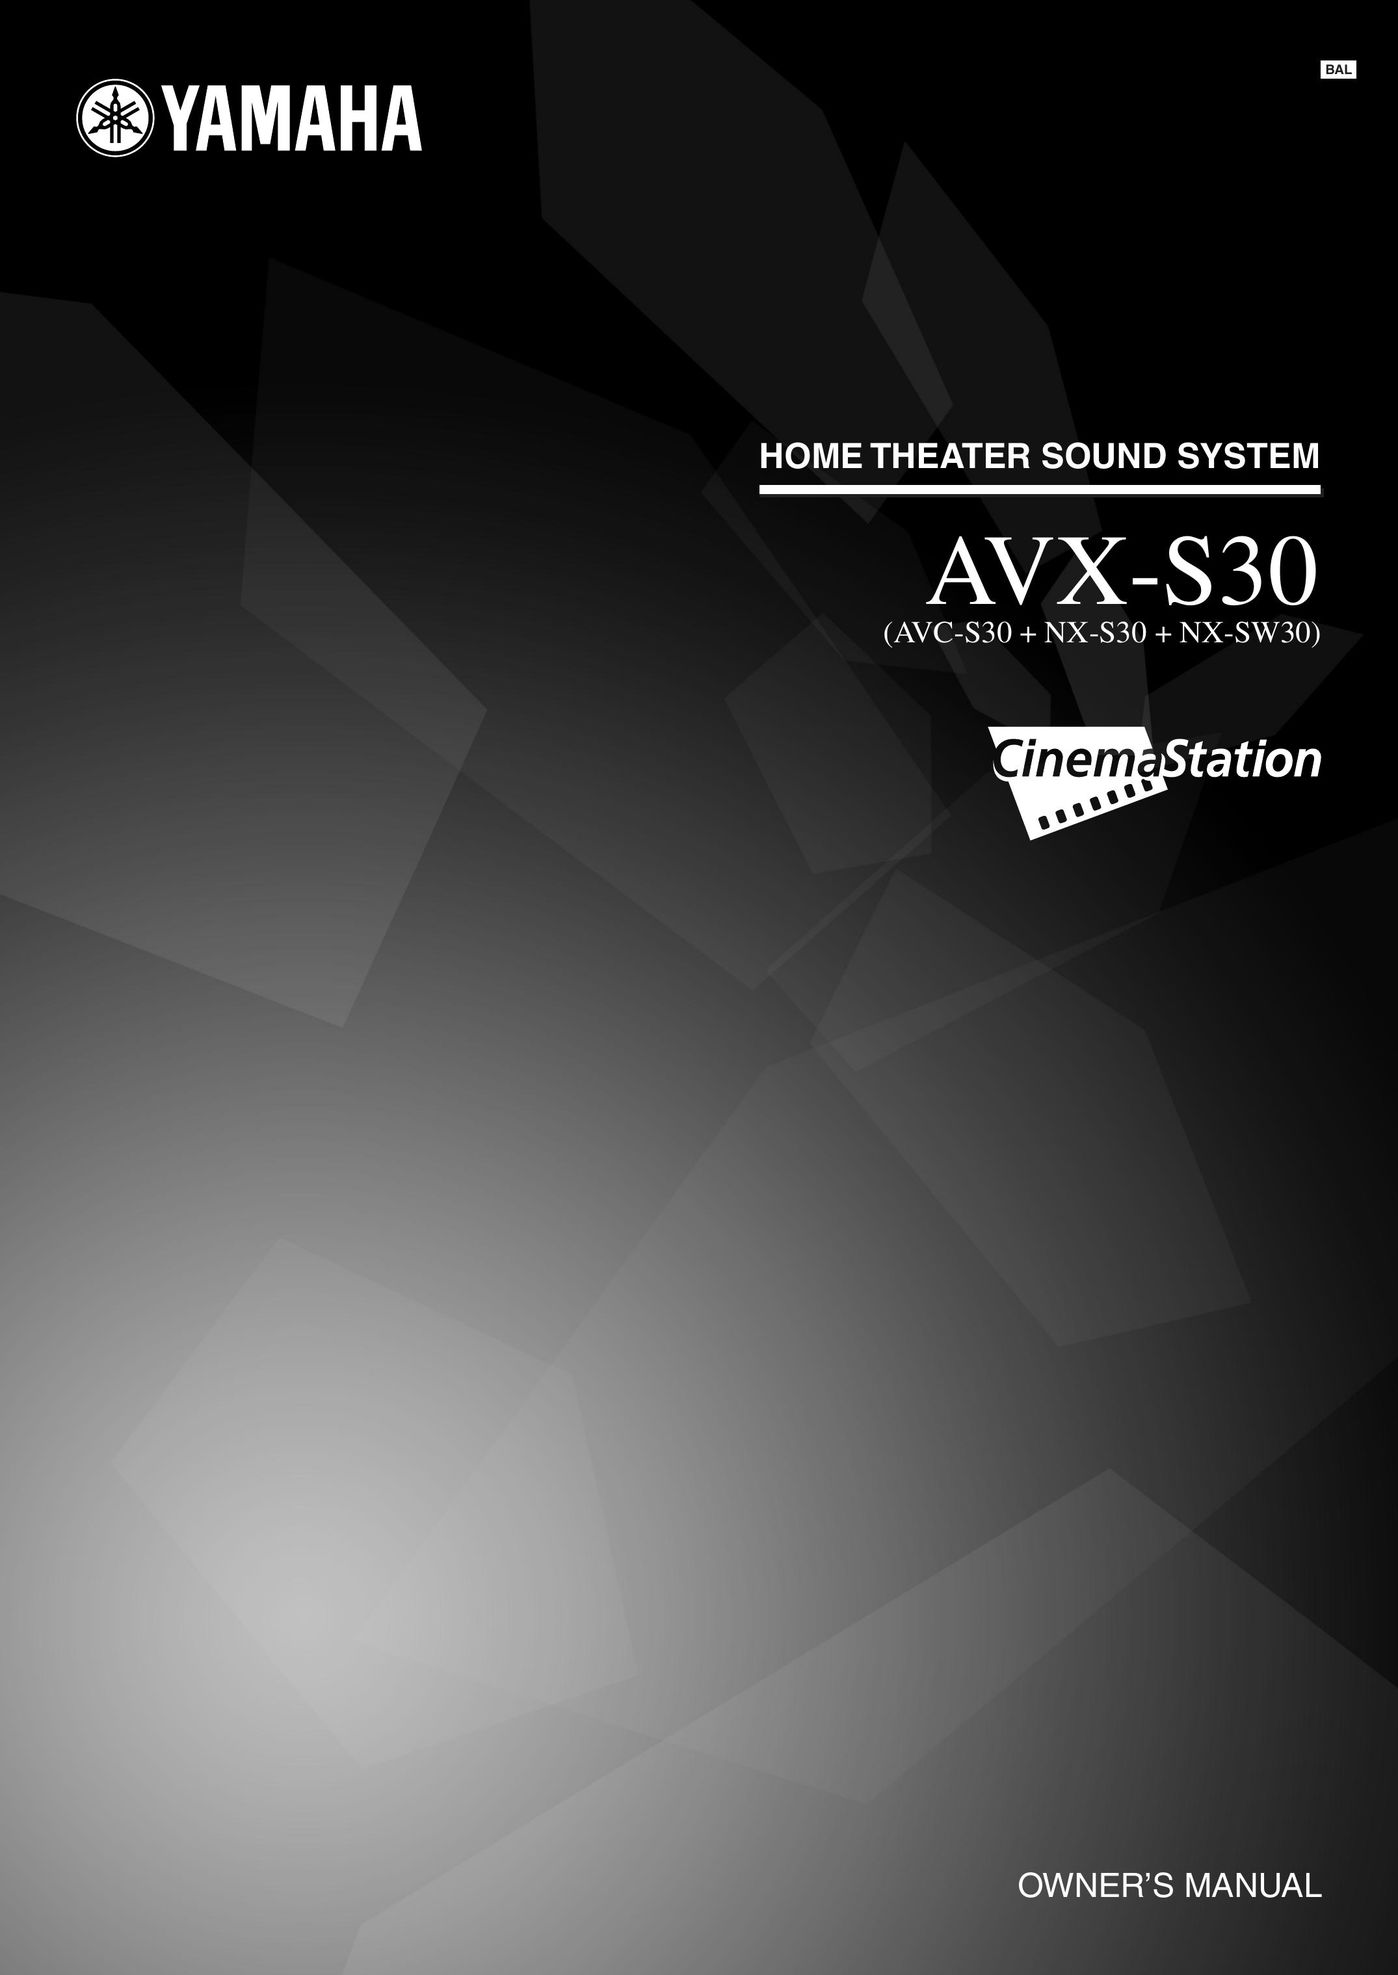 Yamaha AVX-S30 Speaker System User Manual